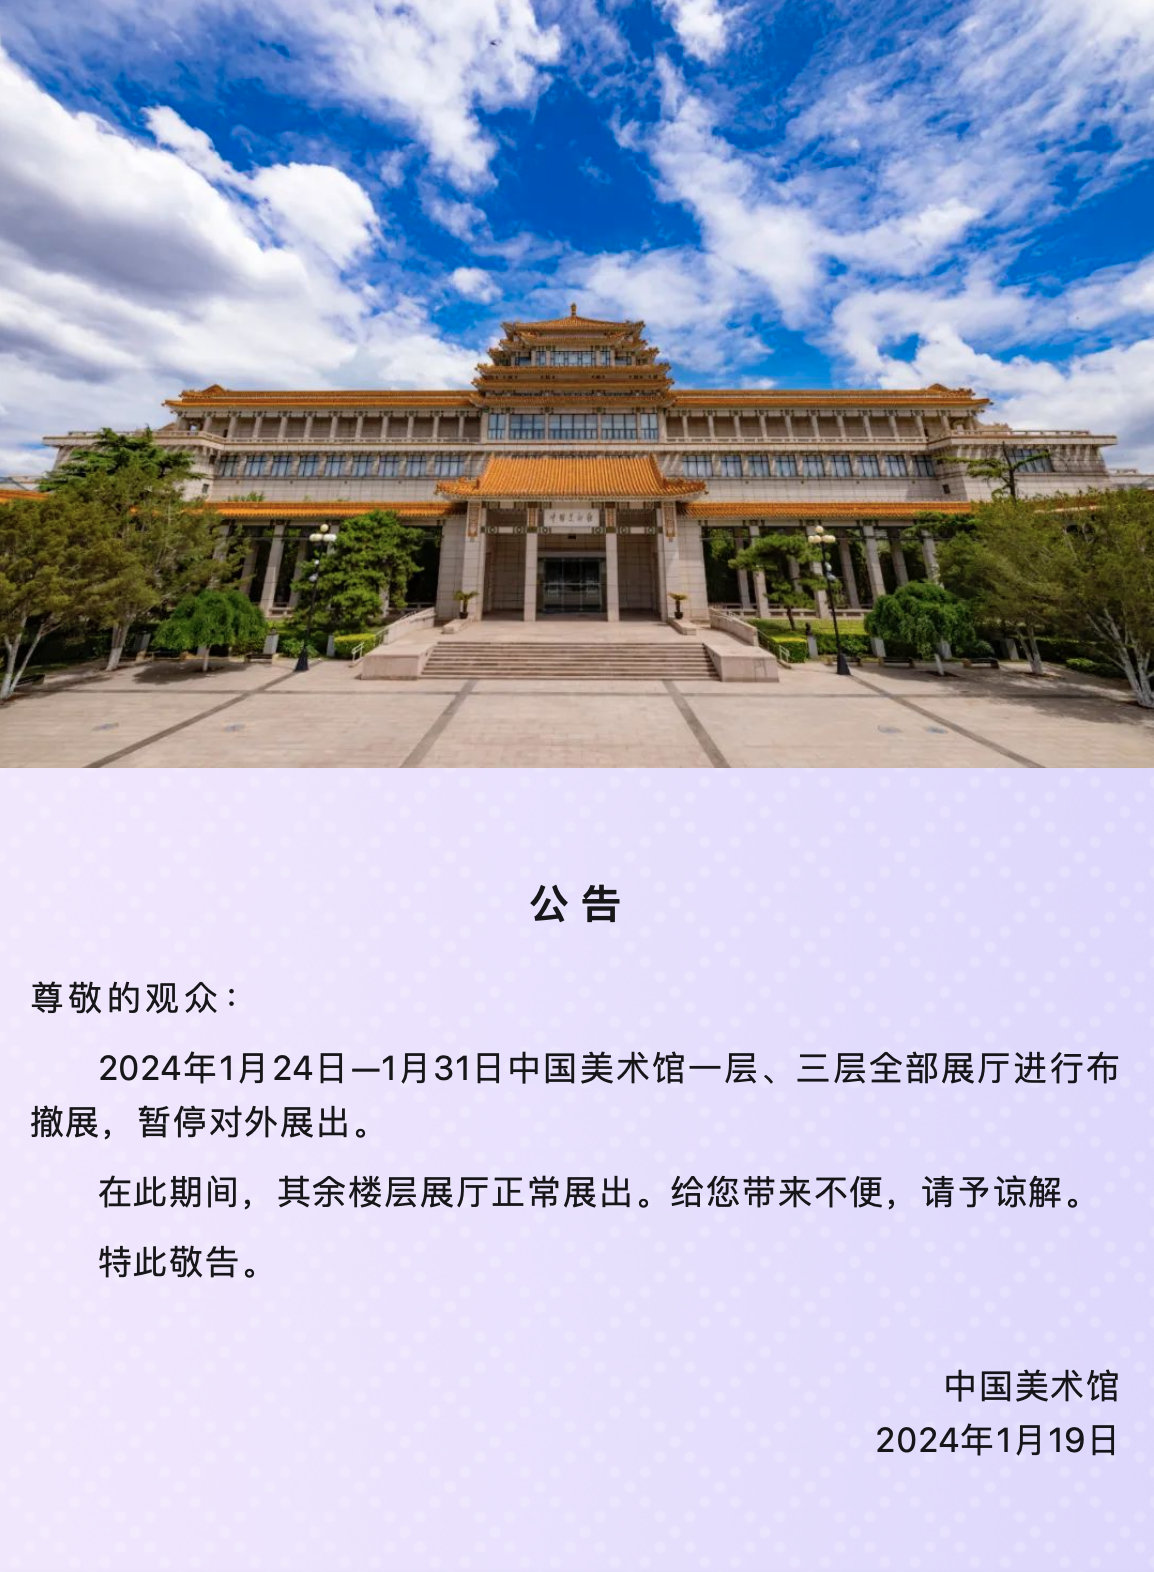 中國美術館關於部分展廳暫停開放的公告